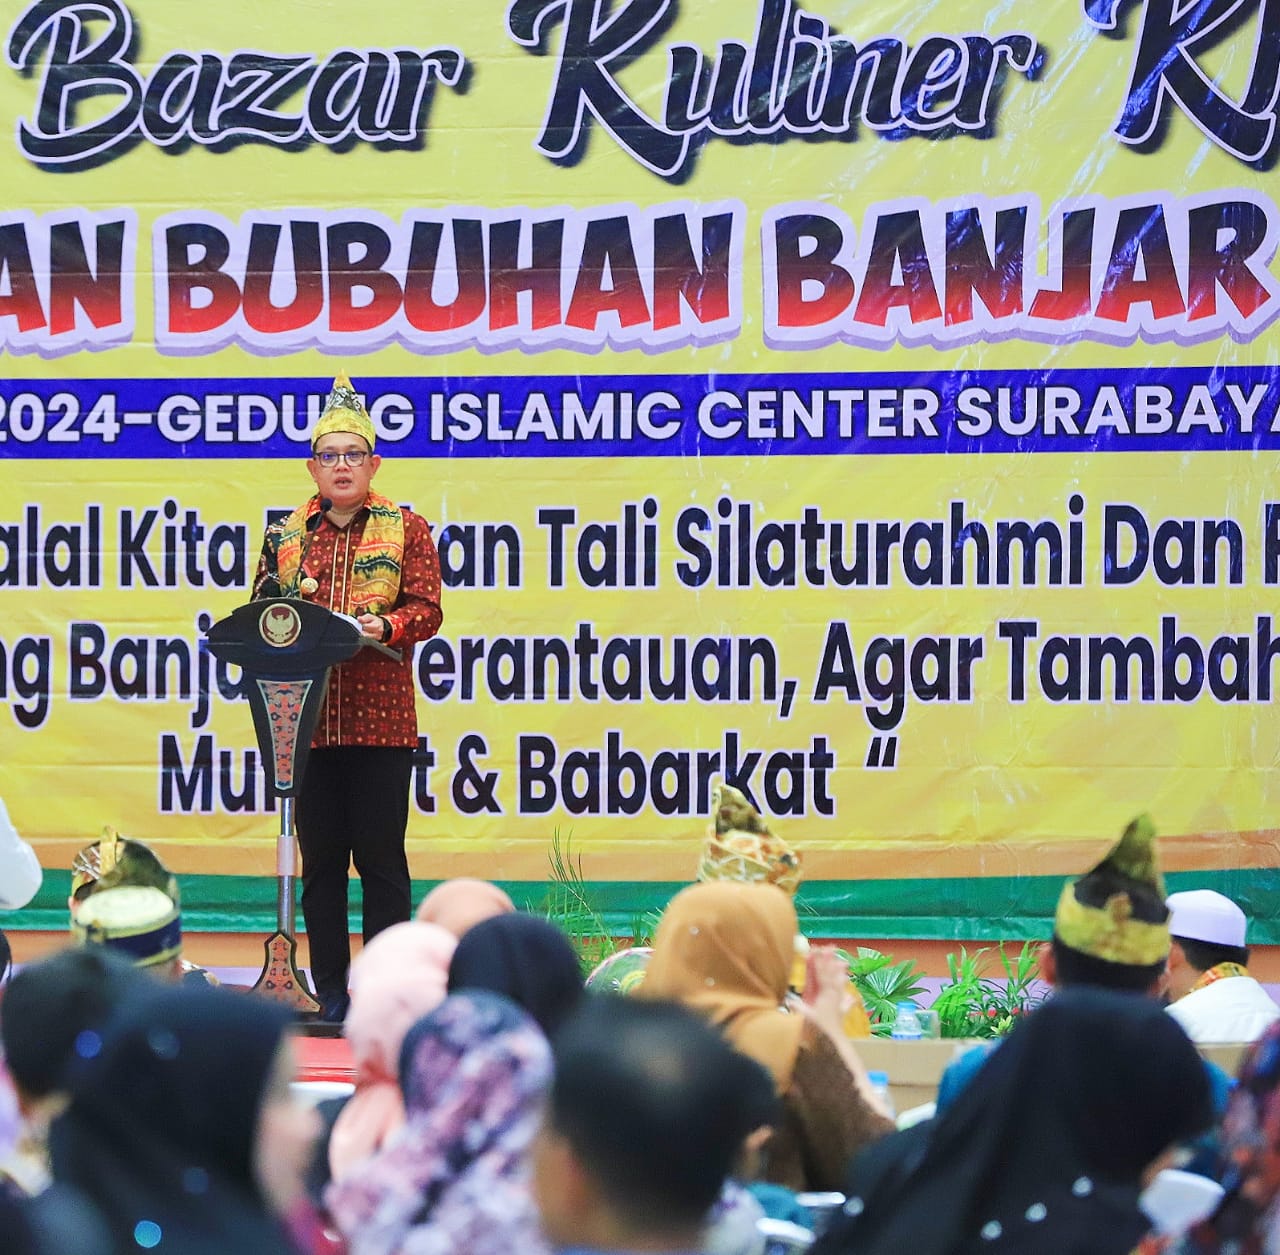 Hadiri Halal Bihalal Kerukunan Bubuhan Banjar, Pj Gubernur Adhy: Jatim Adalah Rumah Nyaman Bagi Semua Etnis dan Agama